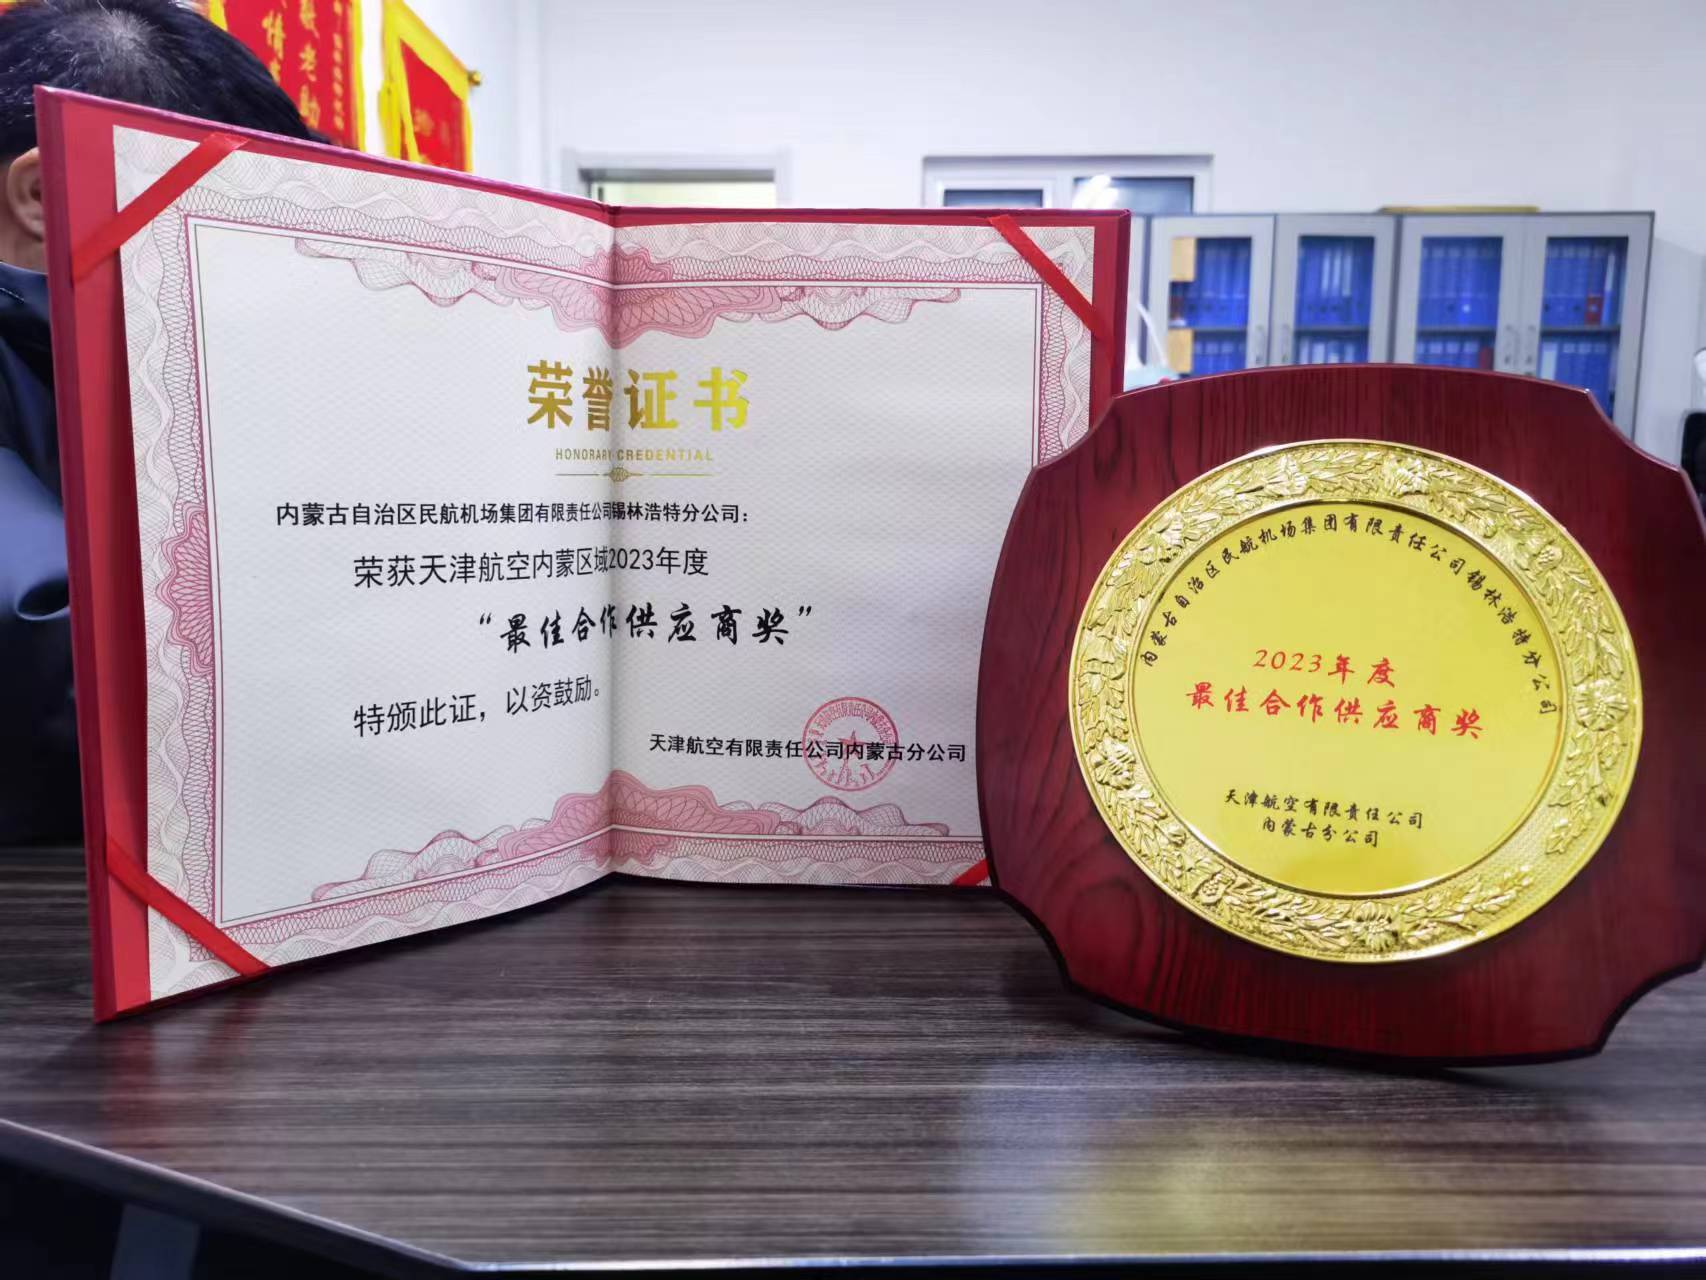 锡林浩特机场荣获天津航空内蒙区域2023年度最佳合作供应商奖